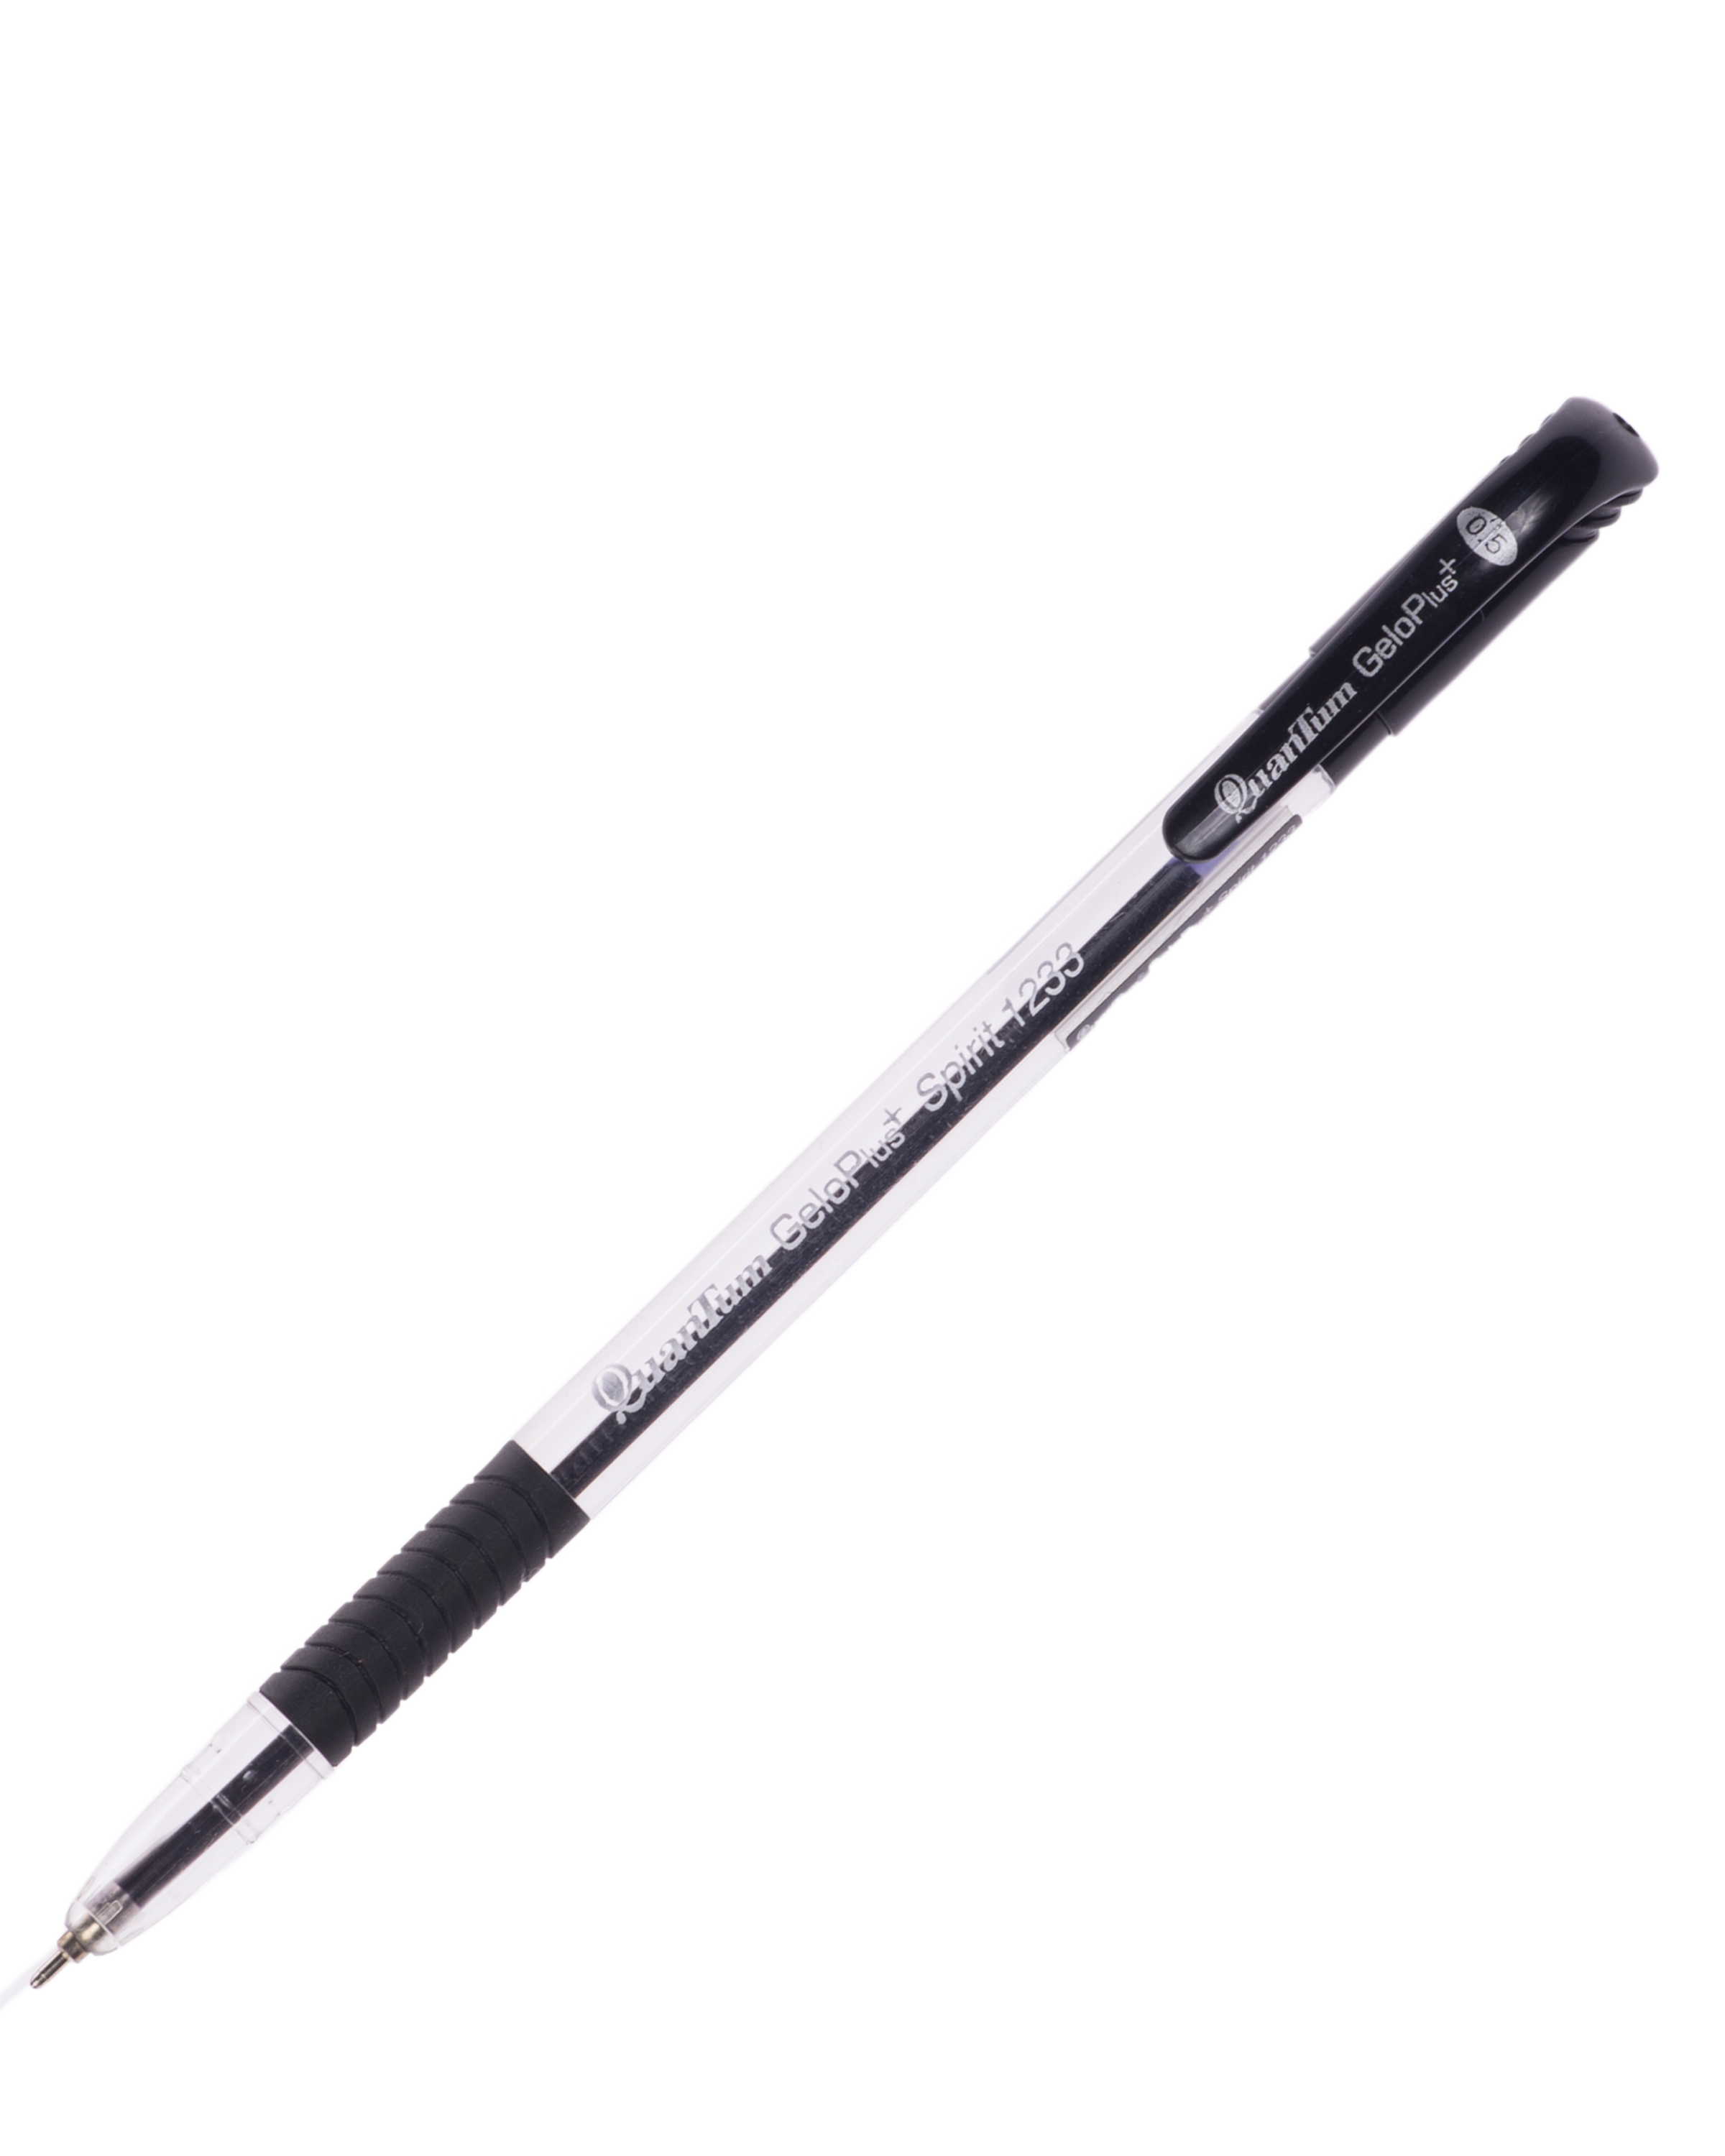 ปากกาQuantumเจลโล่พลัสสปิทริท  1233 ดำ